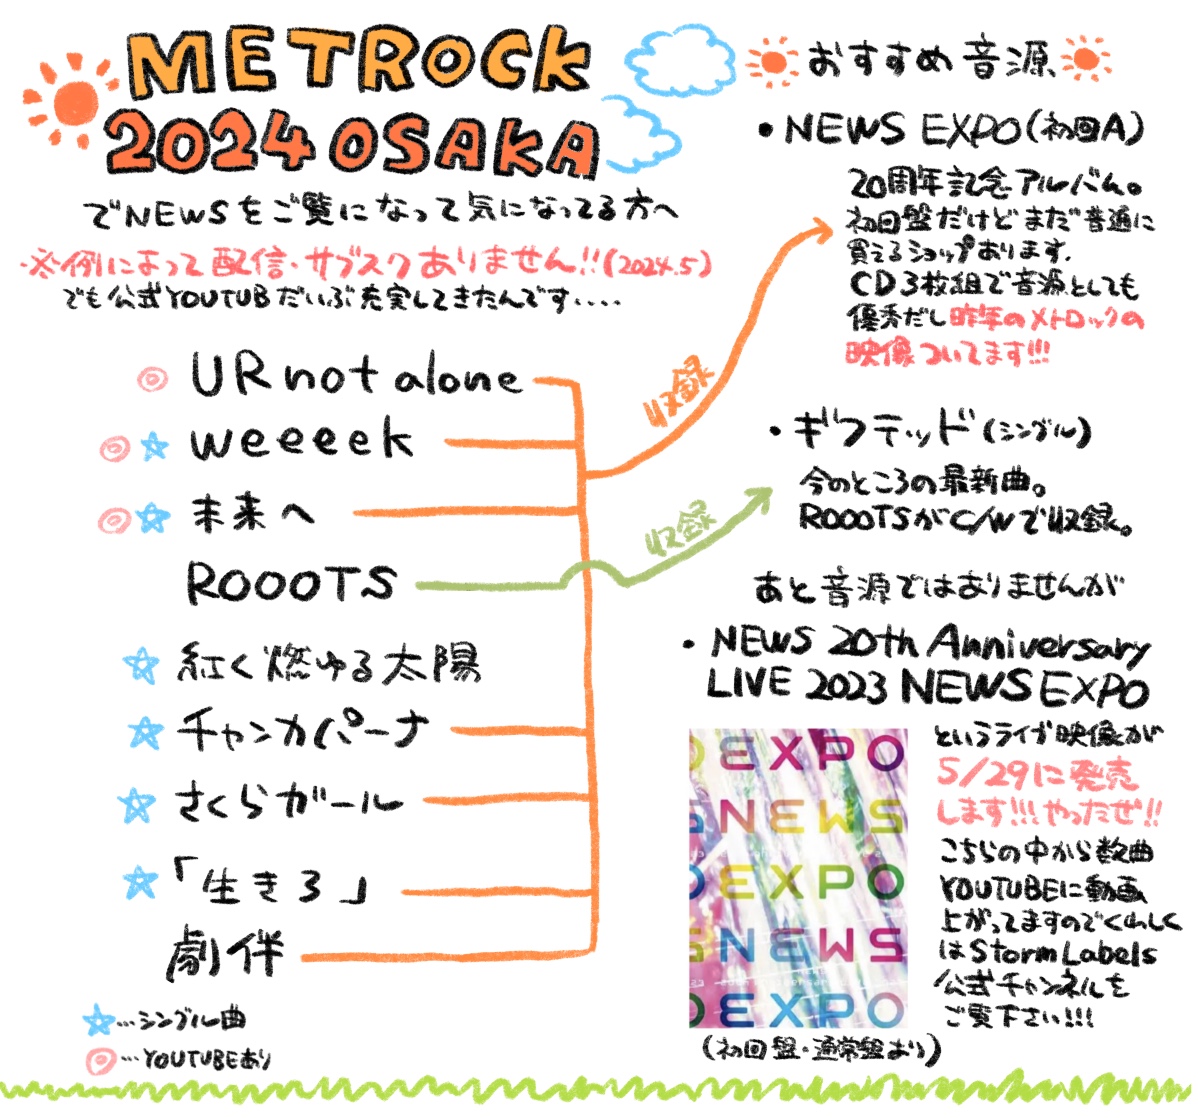 #メトロック 2024大阪1日目でNEWSをはじめてご覧になってちょっと履修したくなってきた人のための簡単まとめを今作りました！！いつものです！！よろしくお願いします！！！（紅く〜は2012年のNEWS BESTが最新収録かも）